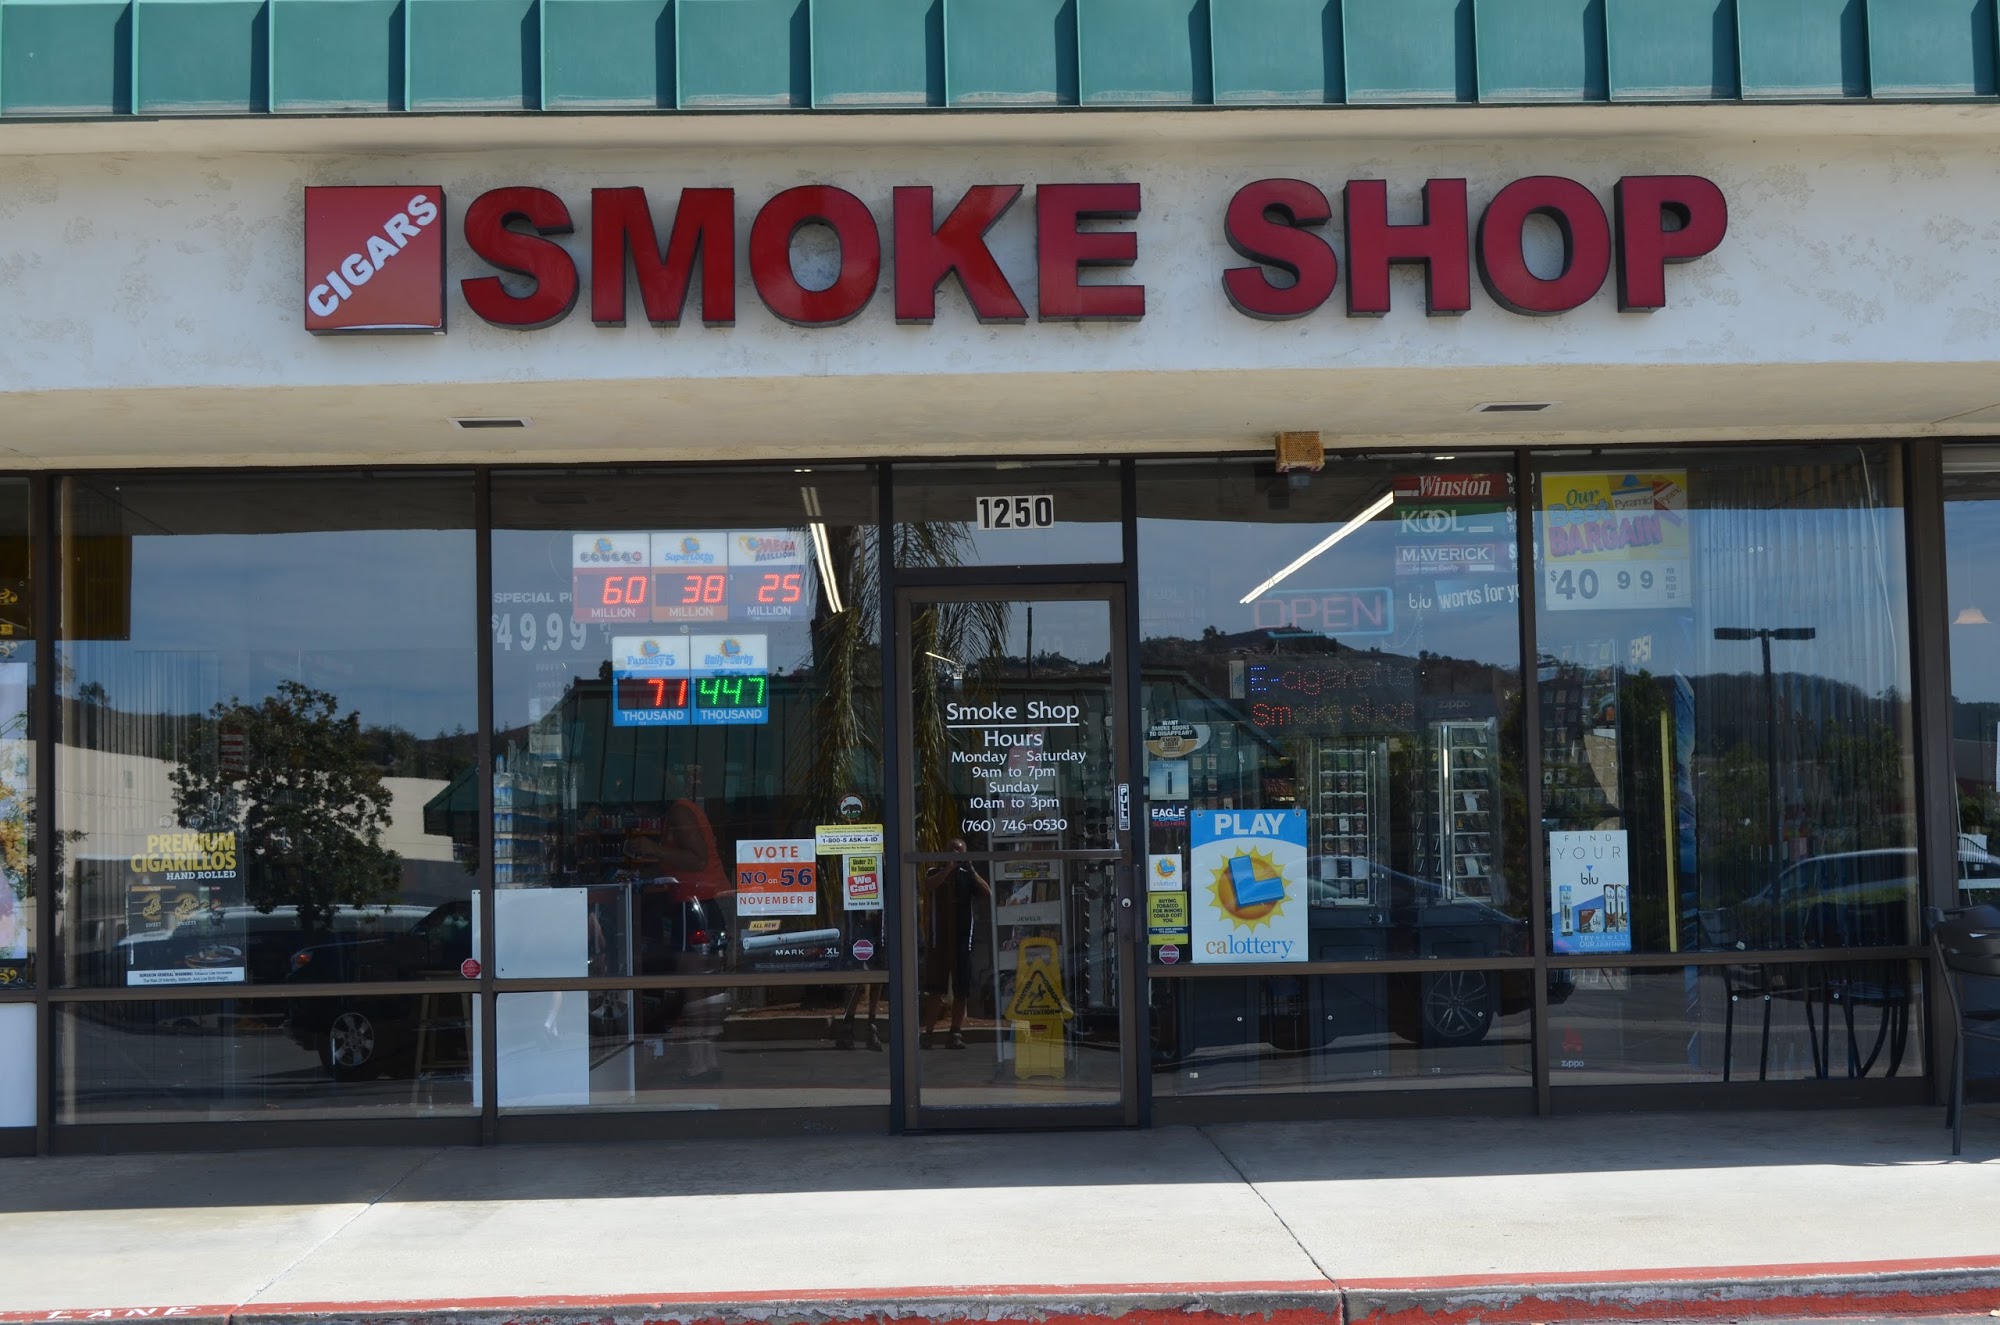 Mission Smoke Shop